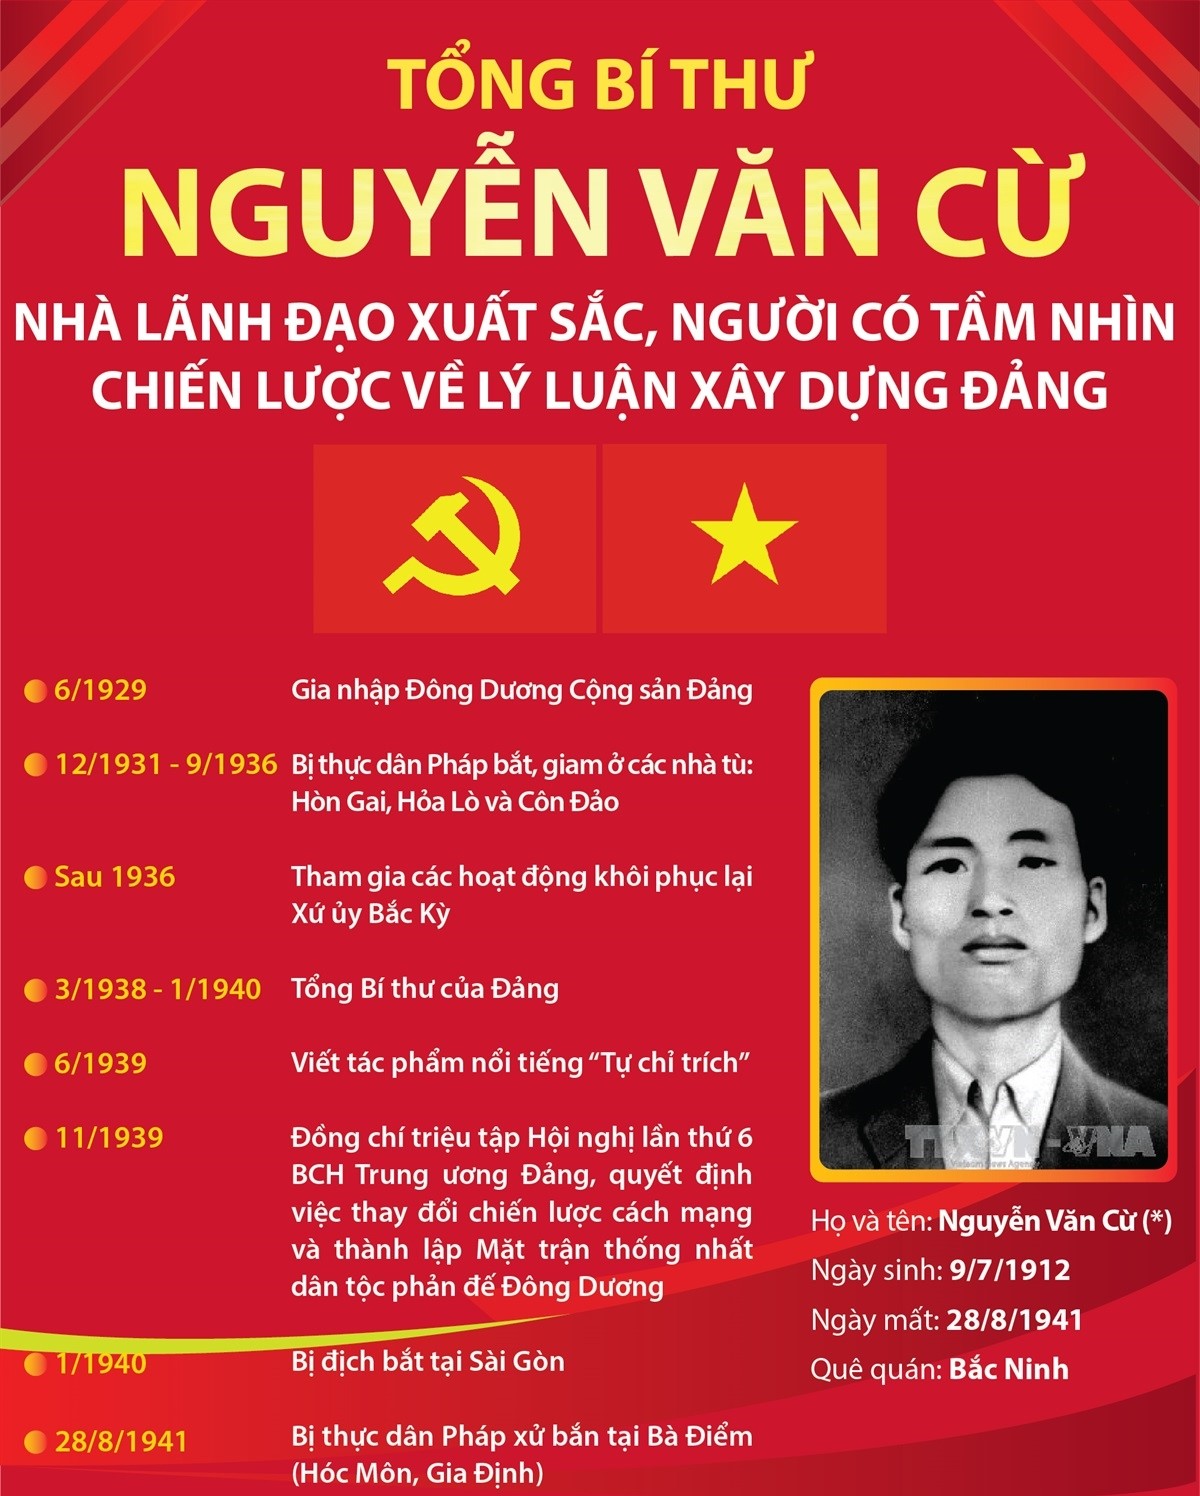 Tổng Bí thư Nguyễn Văn Cừ - Nhà lãnh đạo xuất sắc, người có tầm nhìn chiến lược về lý luận xây dựng Đảng